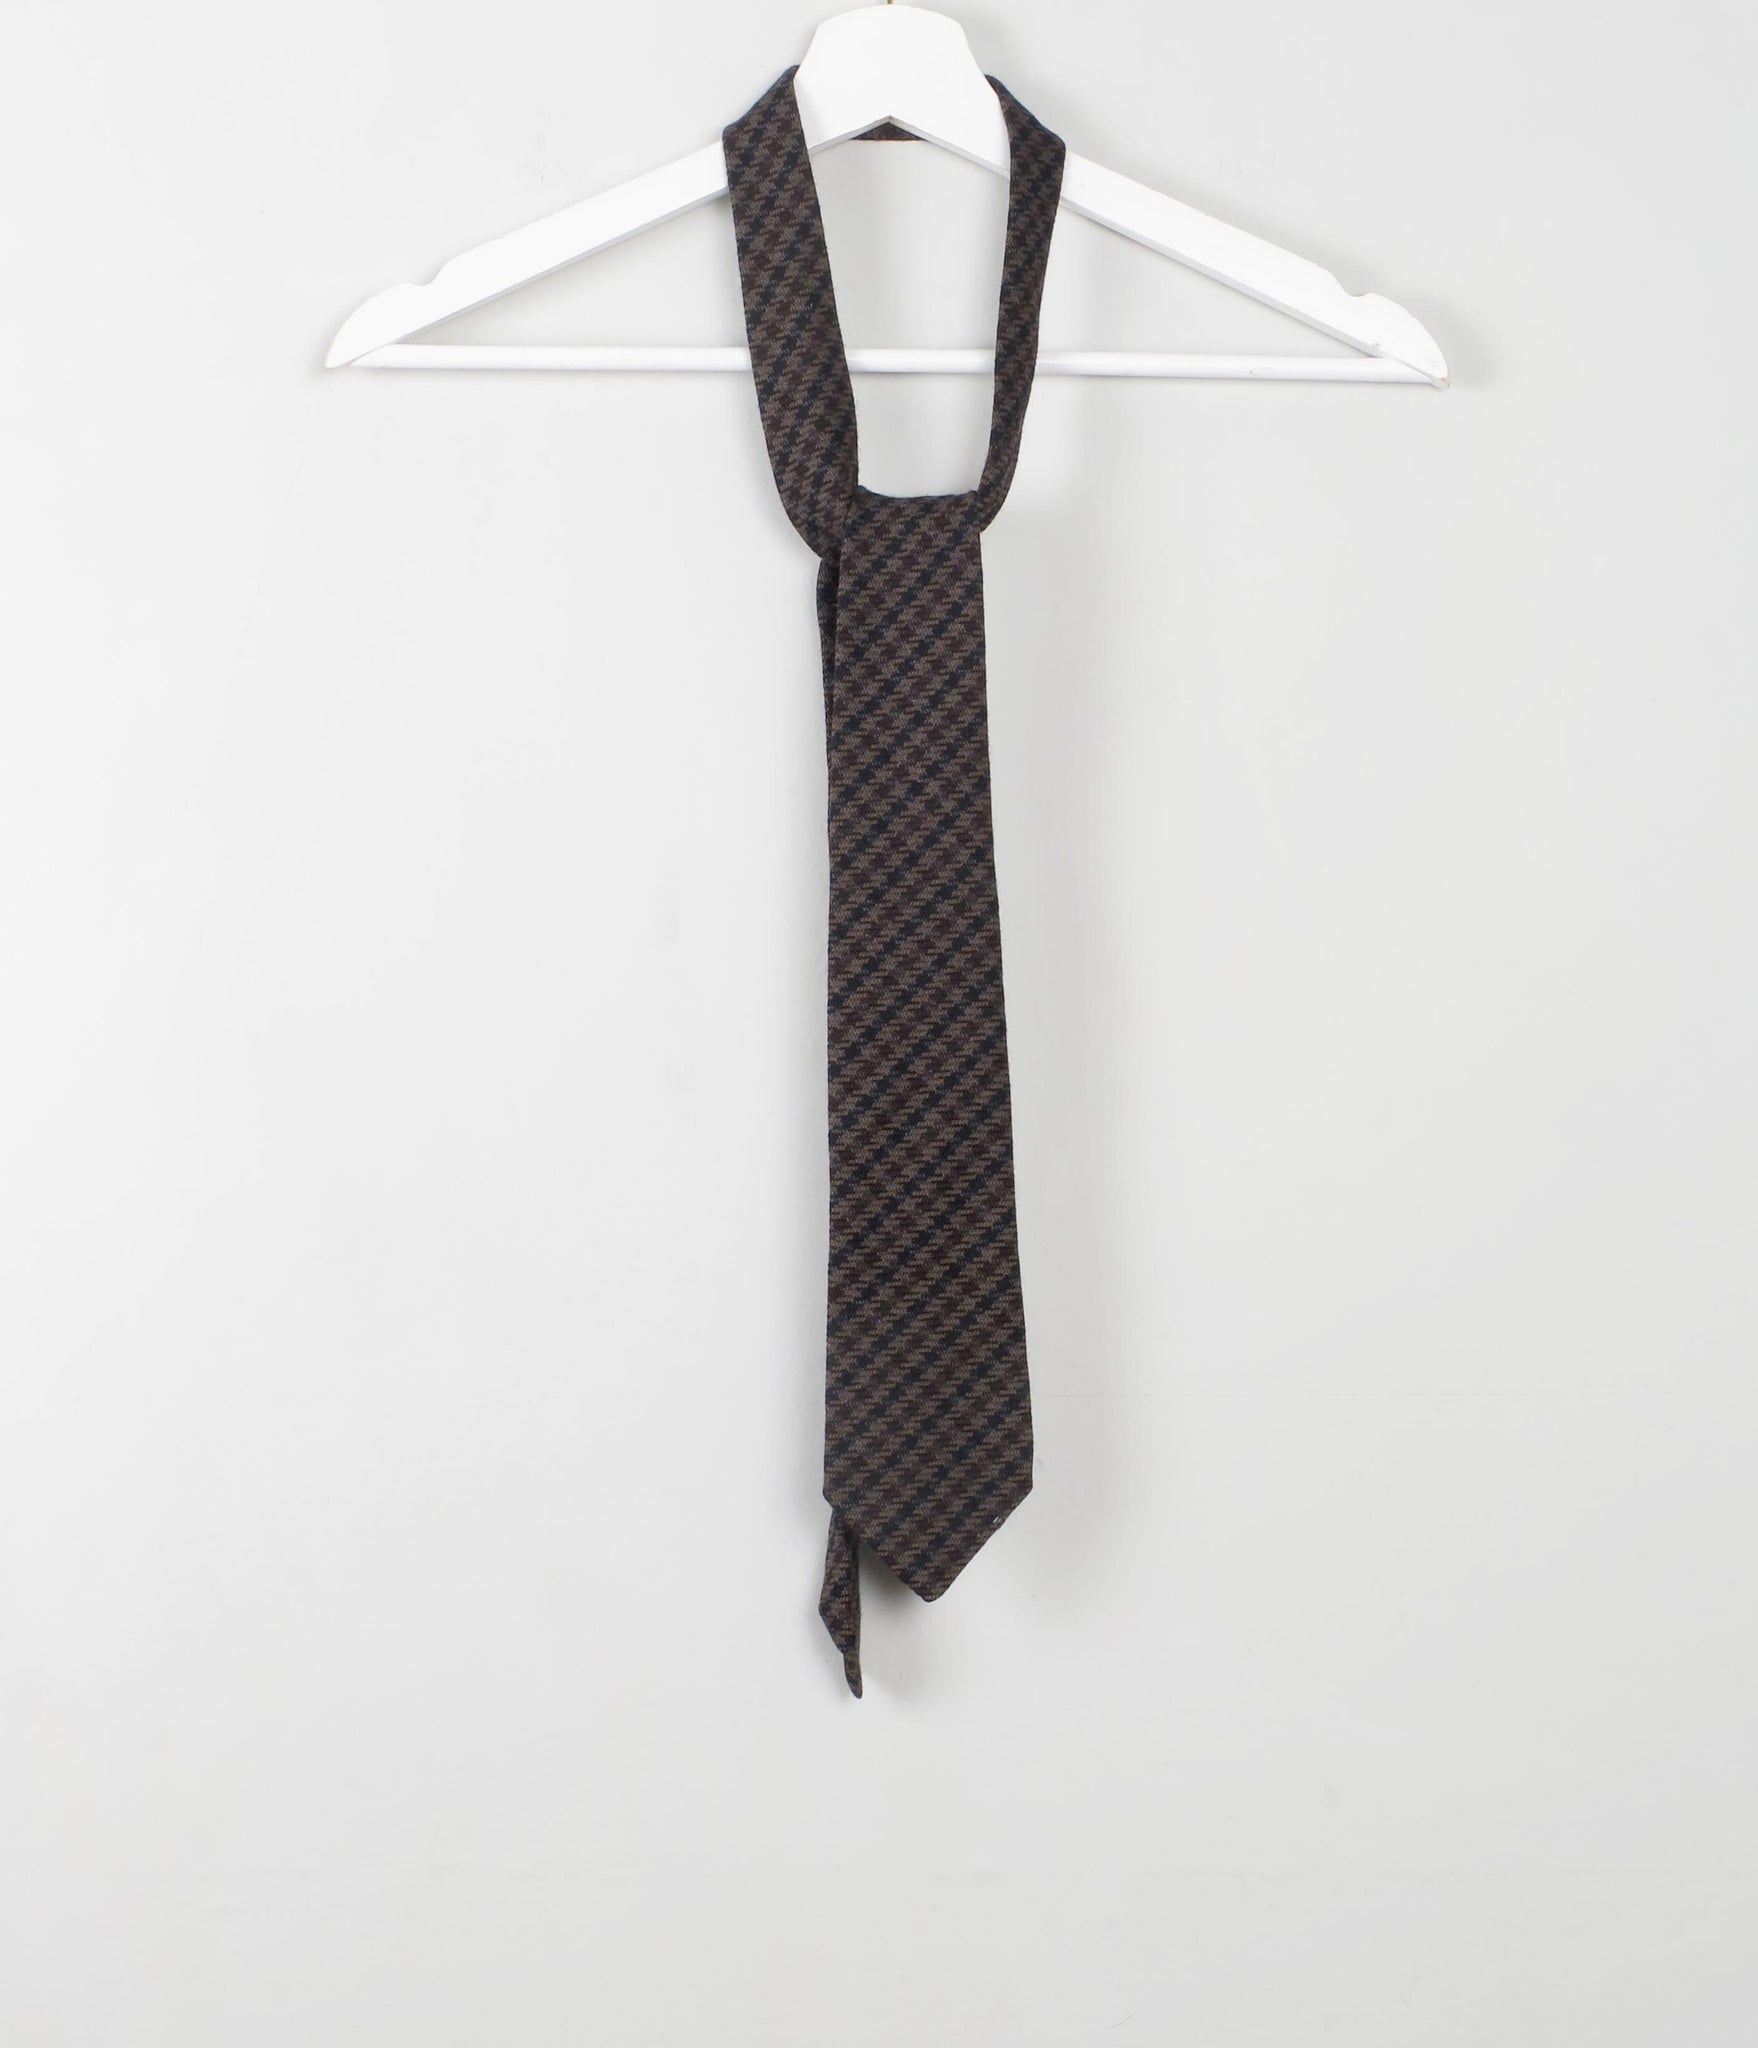 Vintage Tweed Tie - The Harlequin